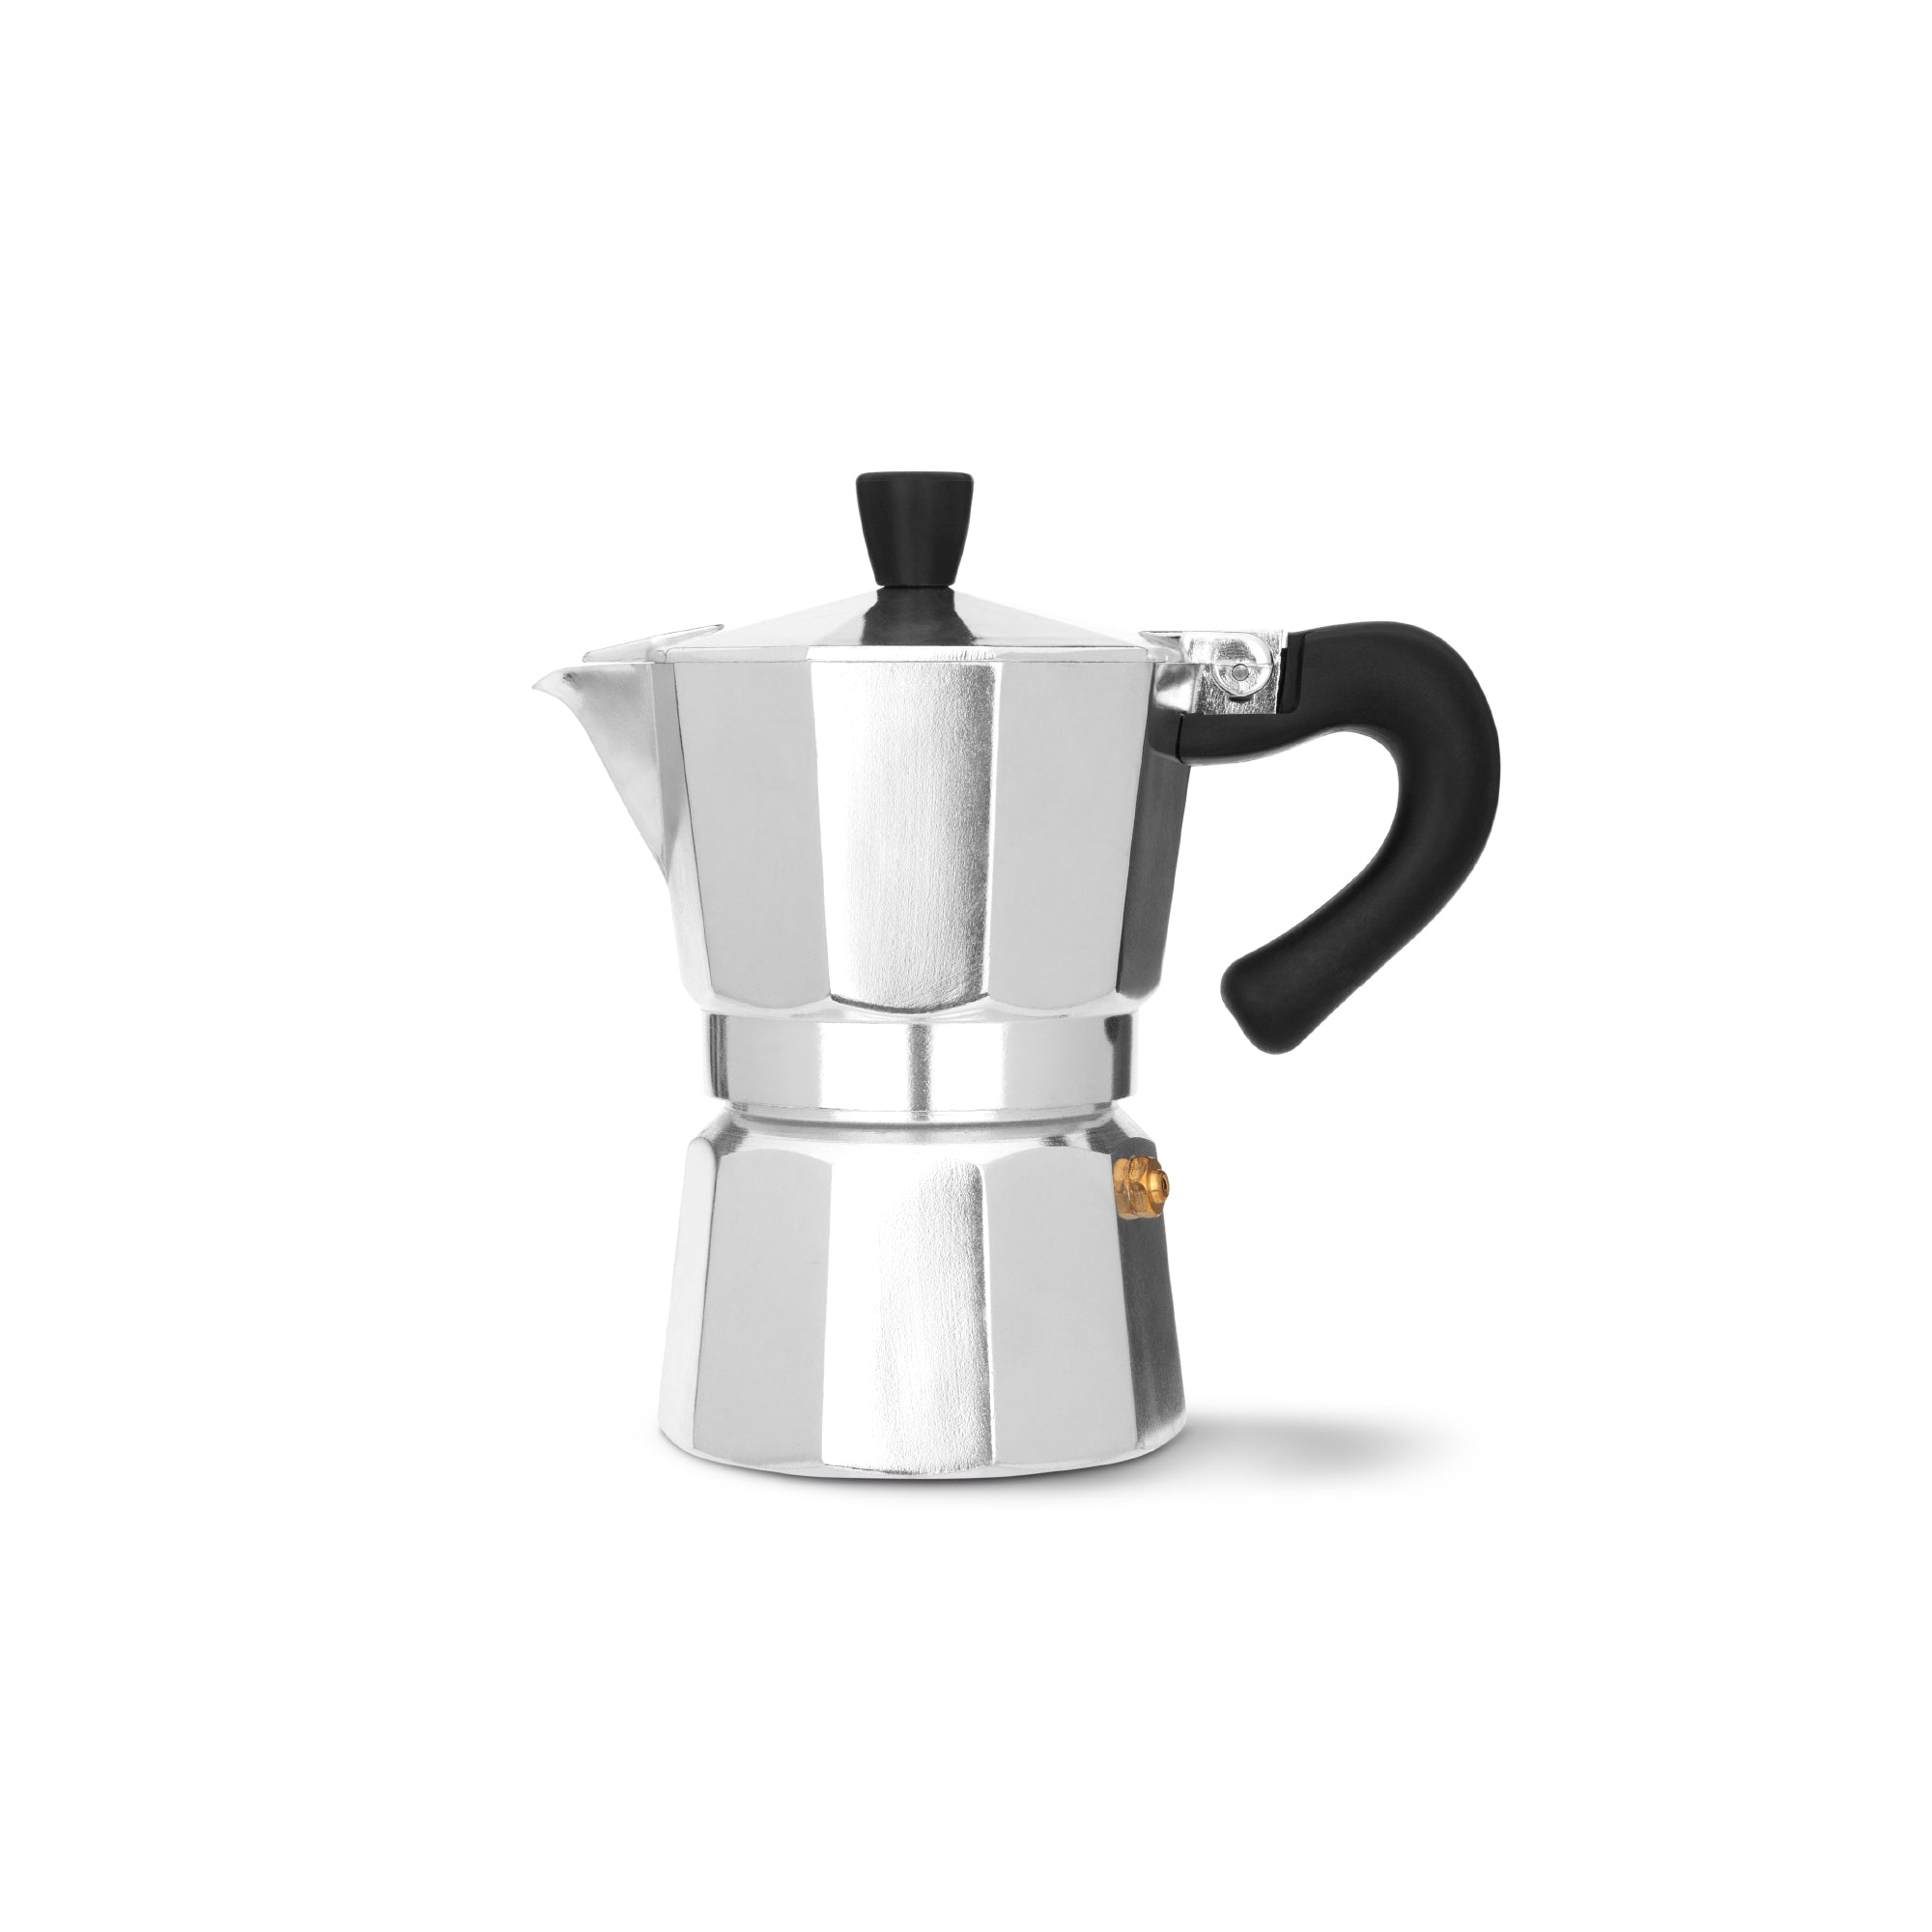 https://cdn.shopify.com/s/files/1/0293/4380/9620/products/espressoworks-three-cup-moka-pot-stovetop-espresso-maker_2000x.jpg?v=1604993394